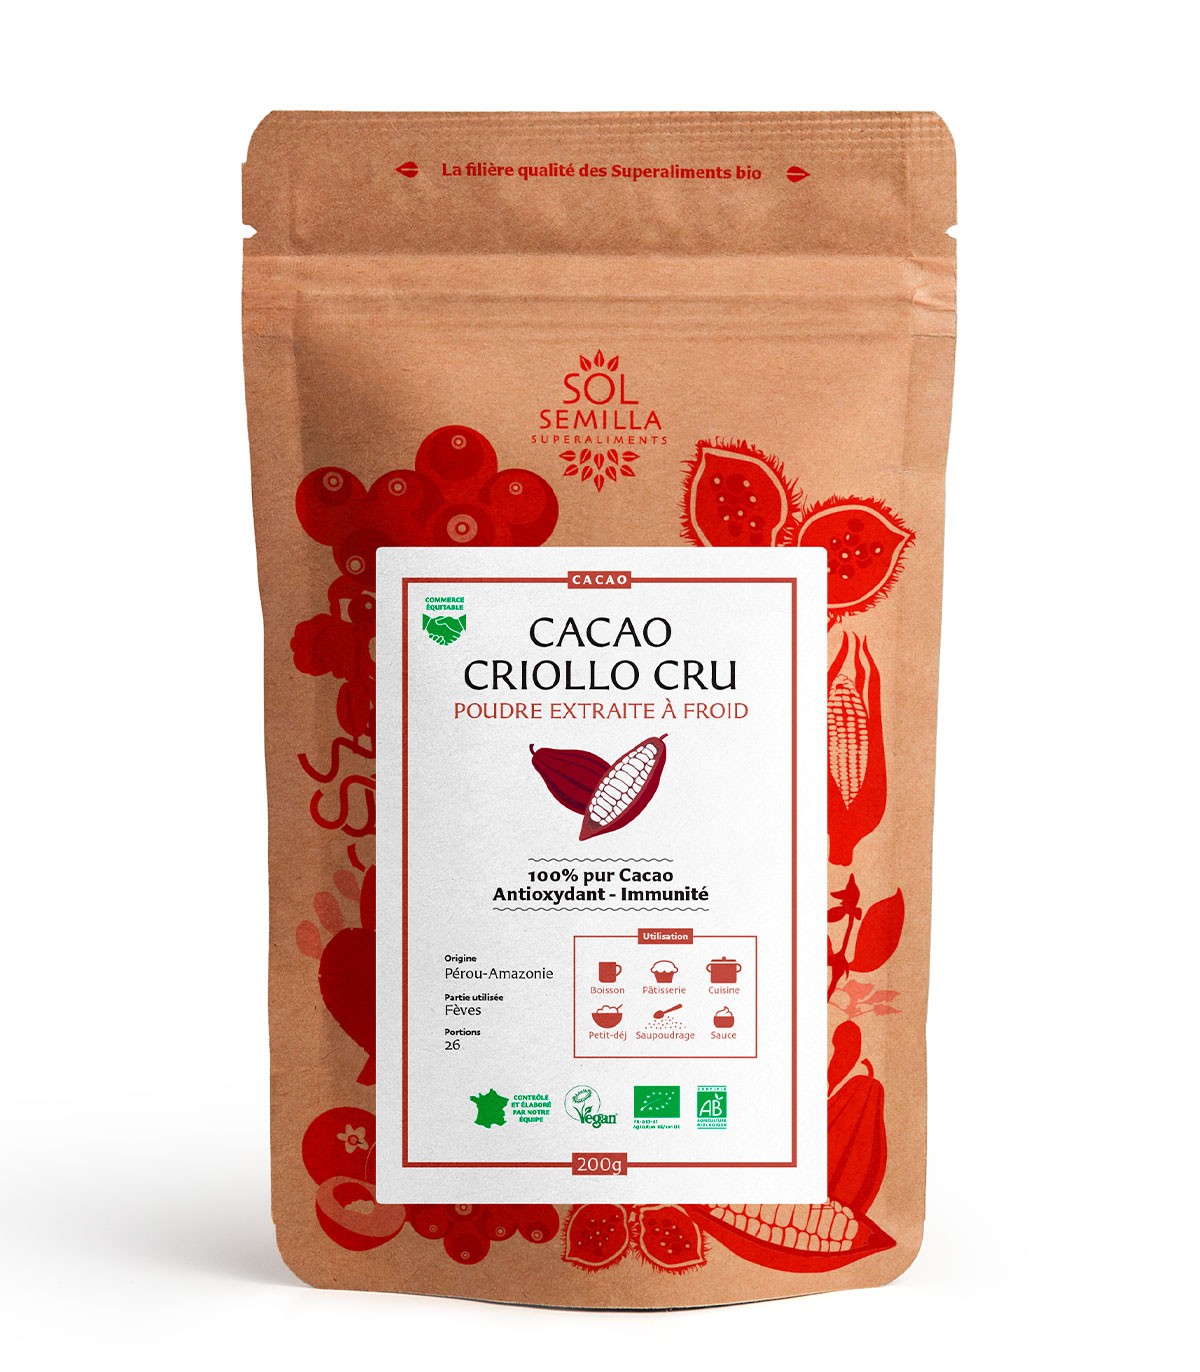 Beurre de cacao - 100% pure et naturelle - équitable & bio